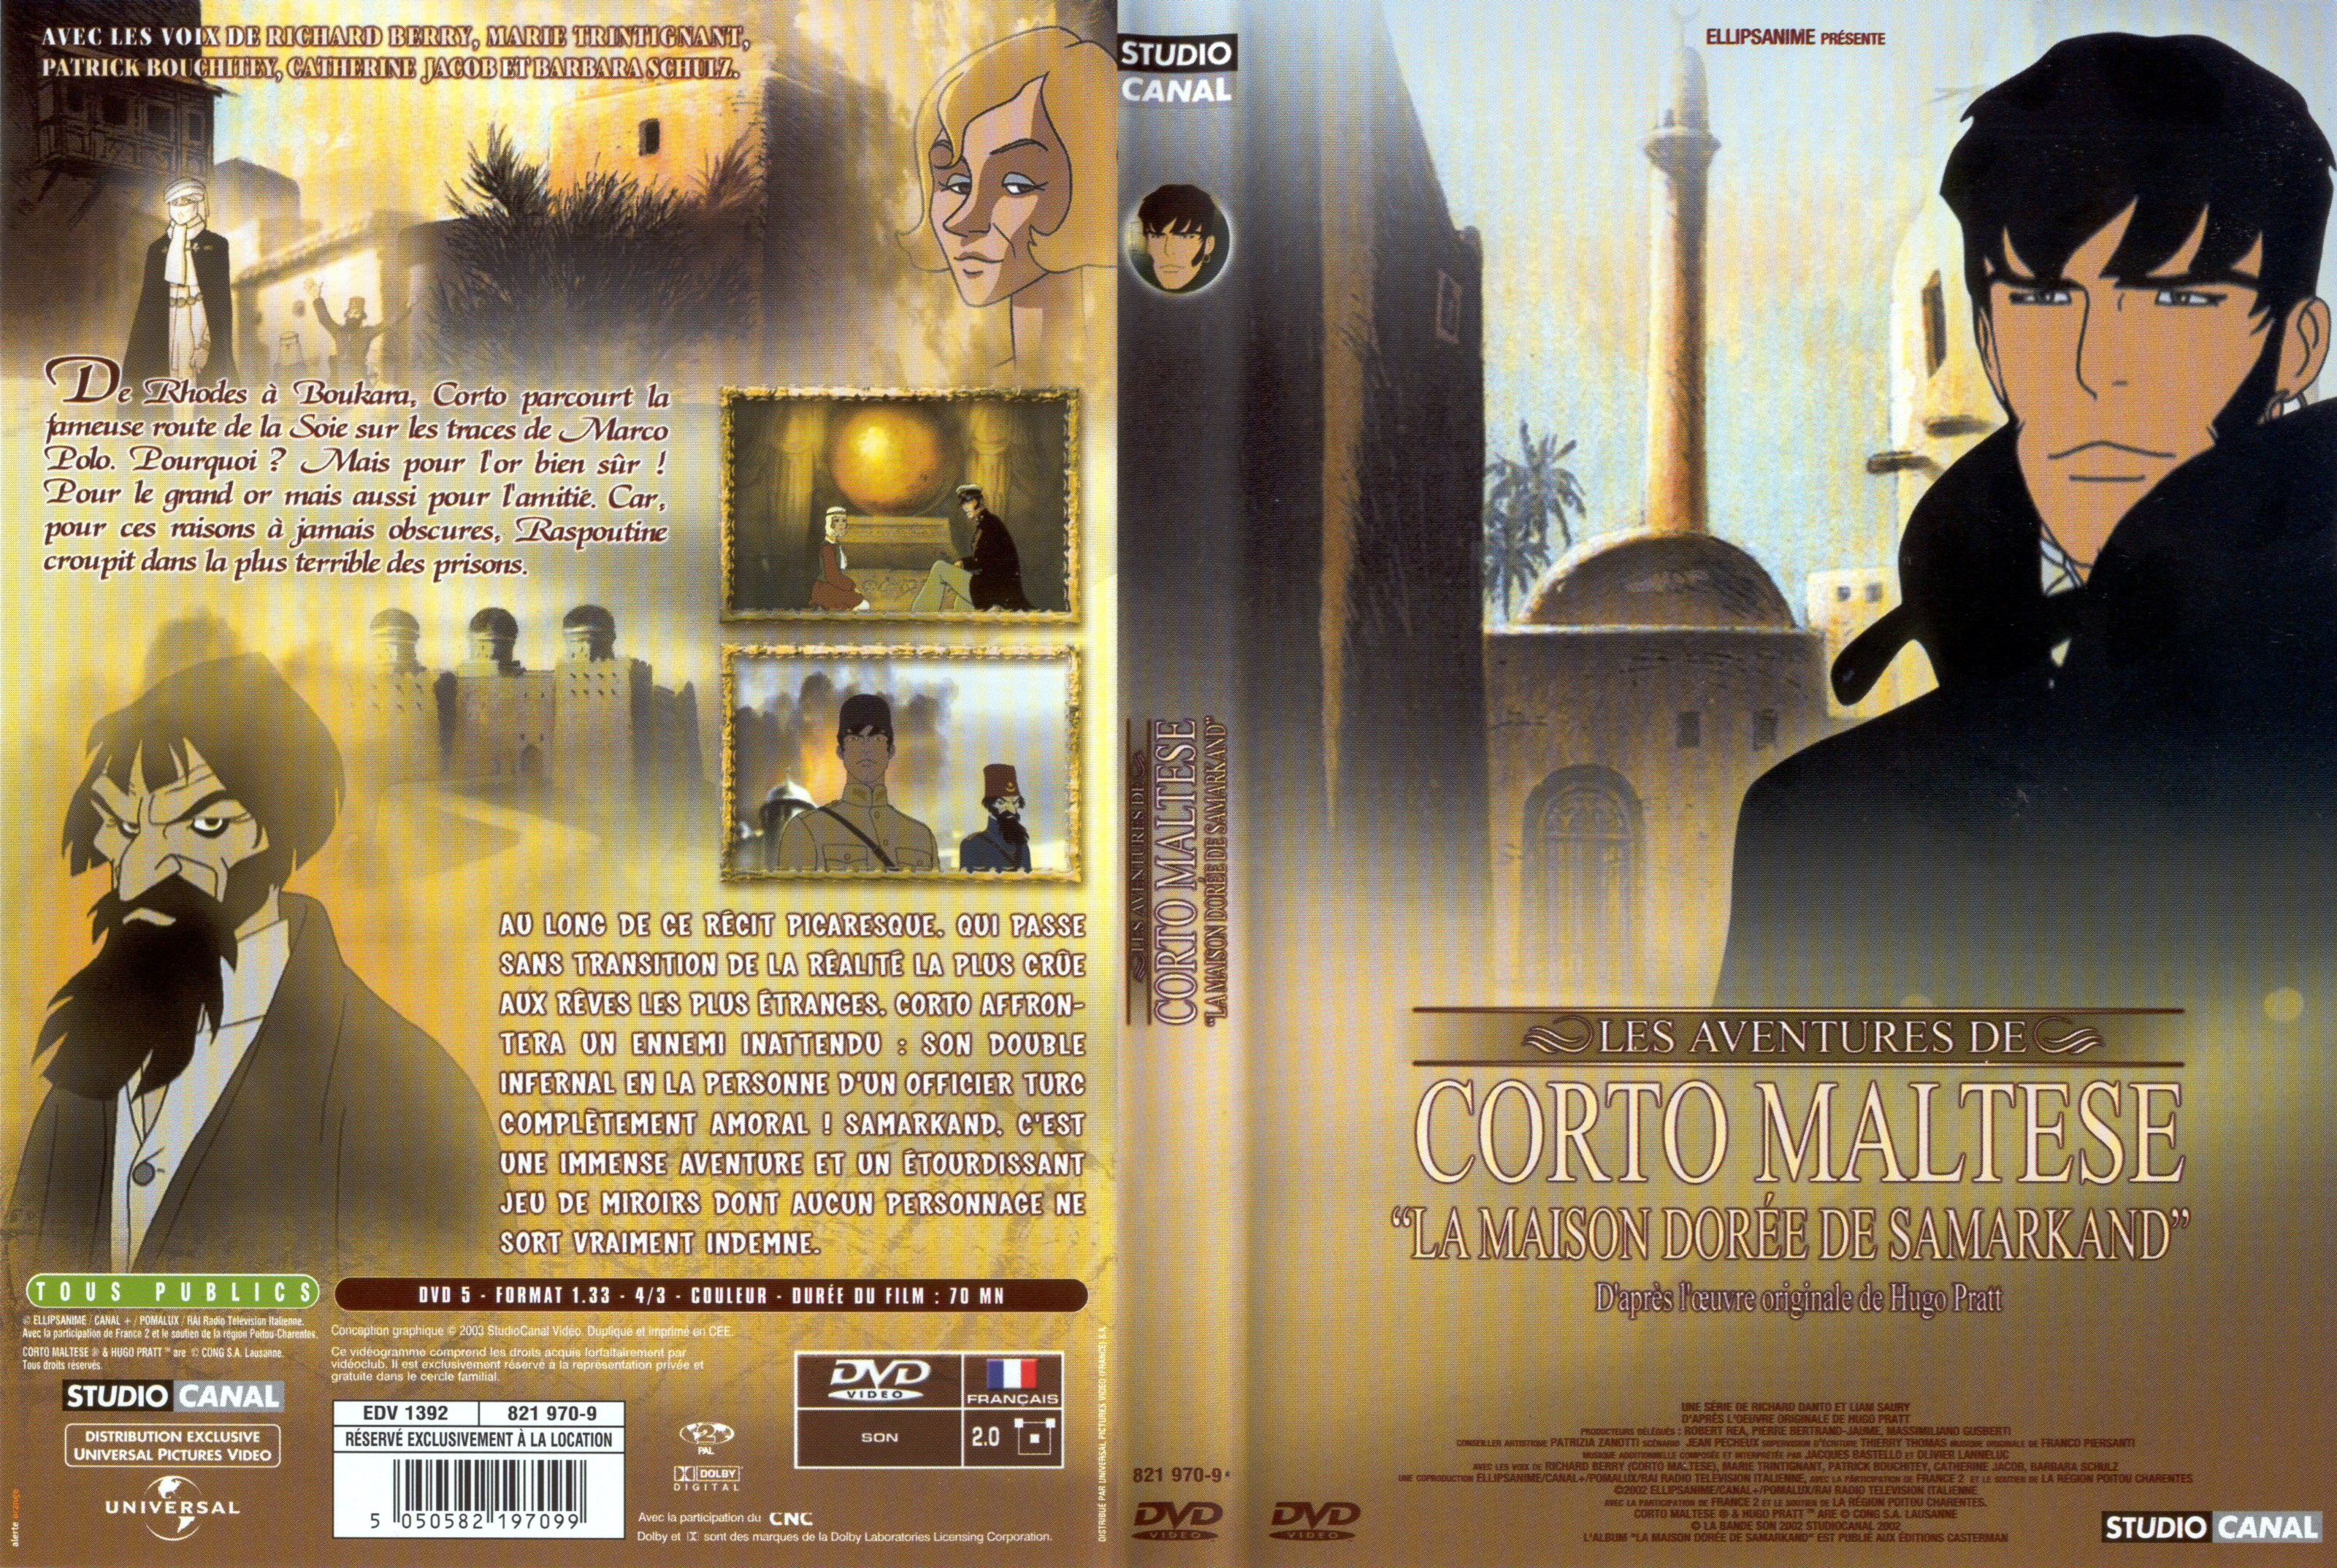 Jaquette DVD Corto Maltese - la maison dore de samarkand